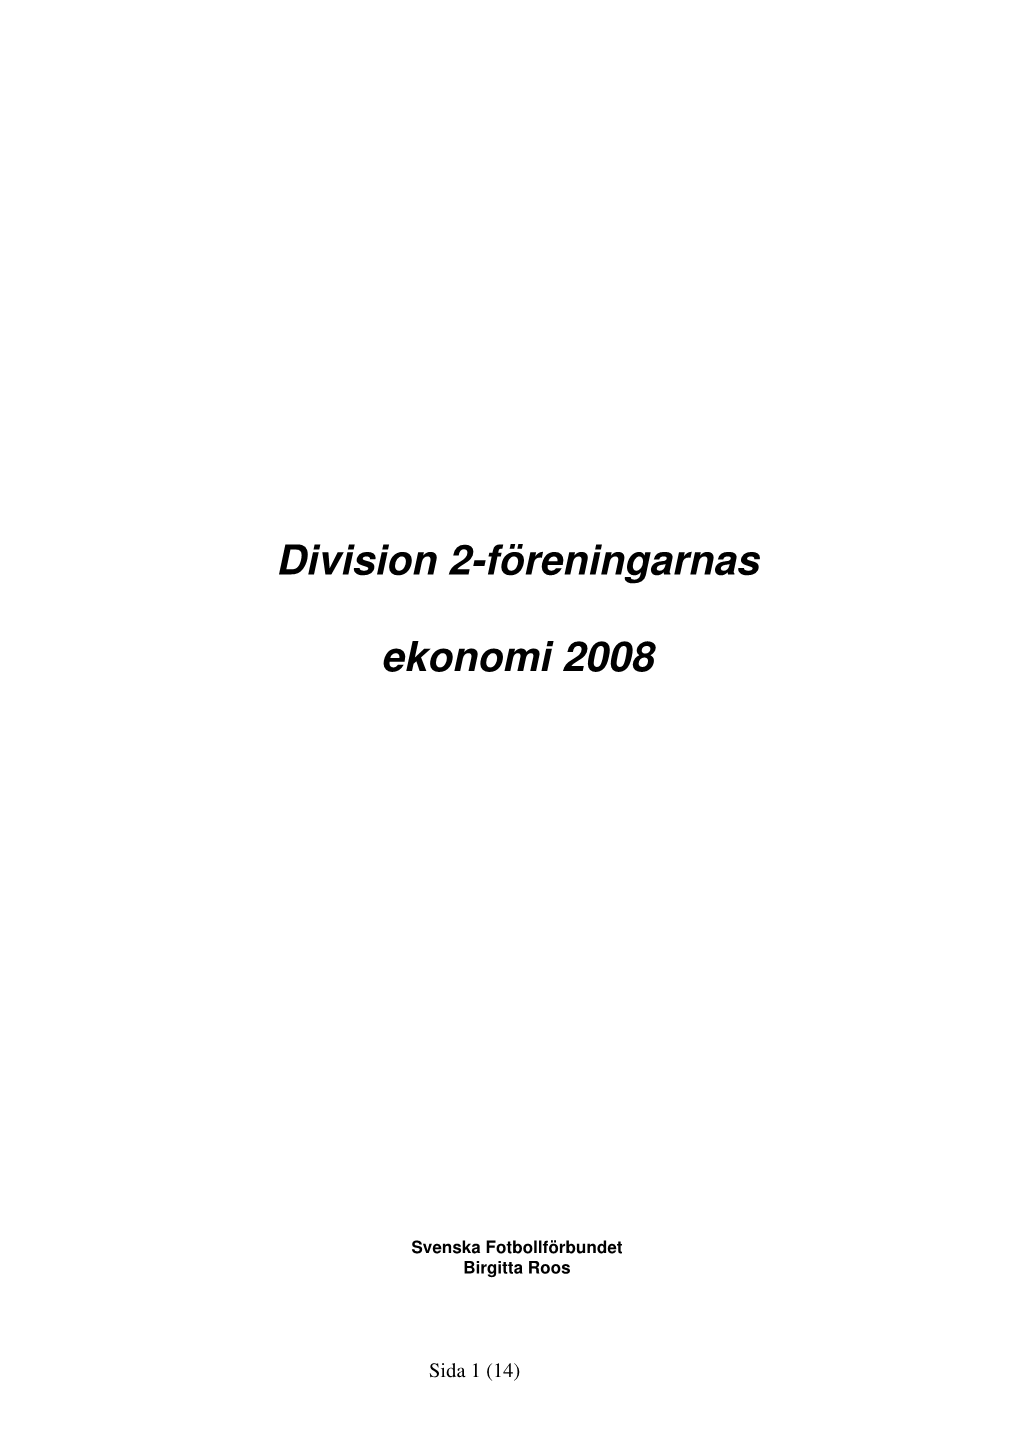 Division 2-Föreningarnas Ekonomi 2008